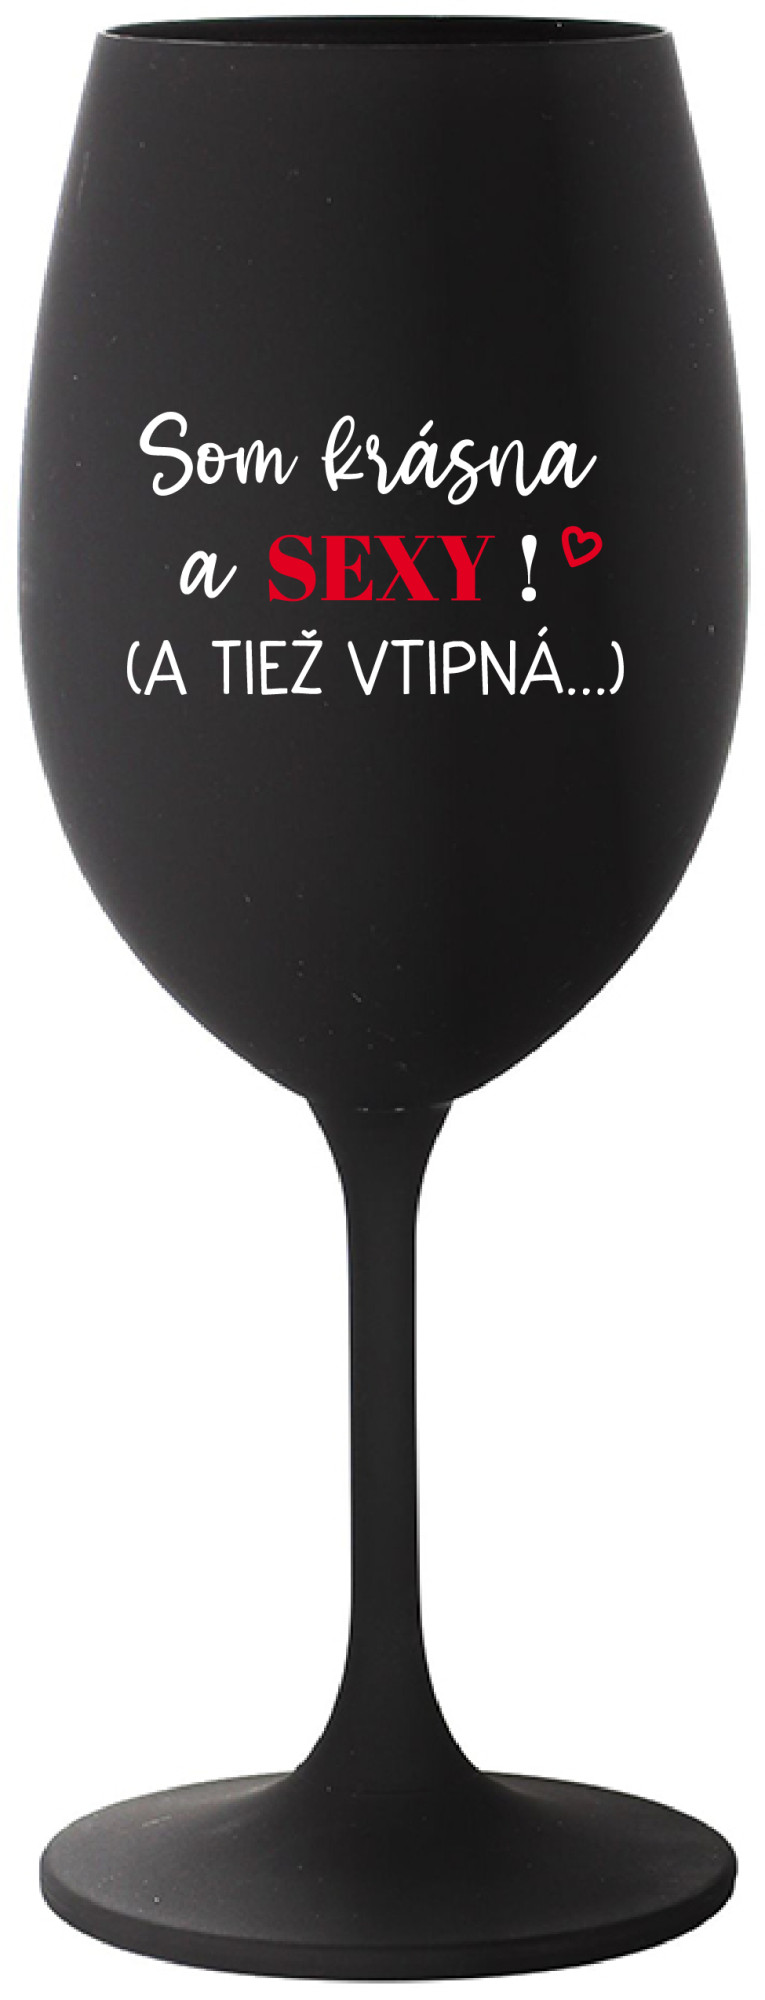 SOM KRÁSNA A SEXY! (A TIEŽ VTIPNÁ...) - černá sklenice na víno 350 ml